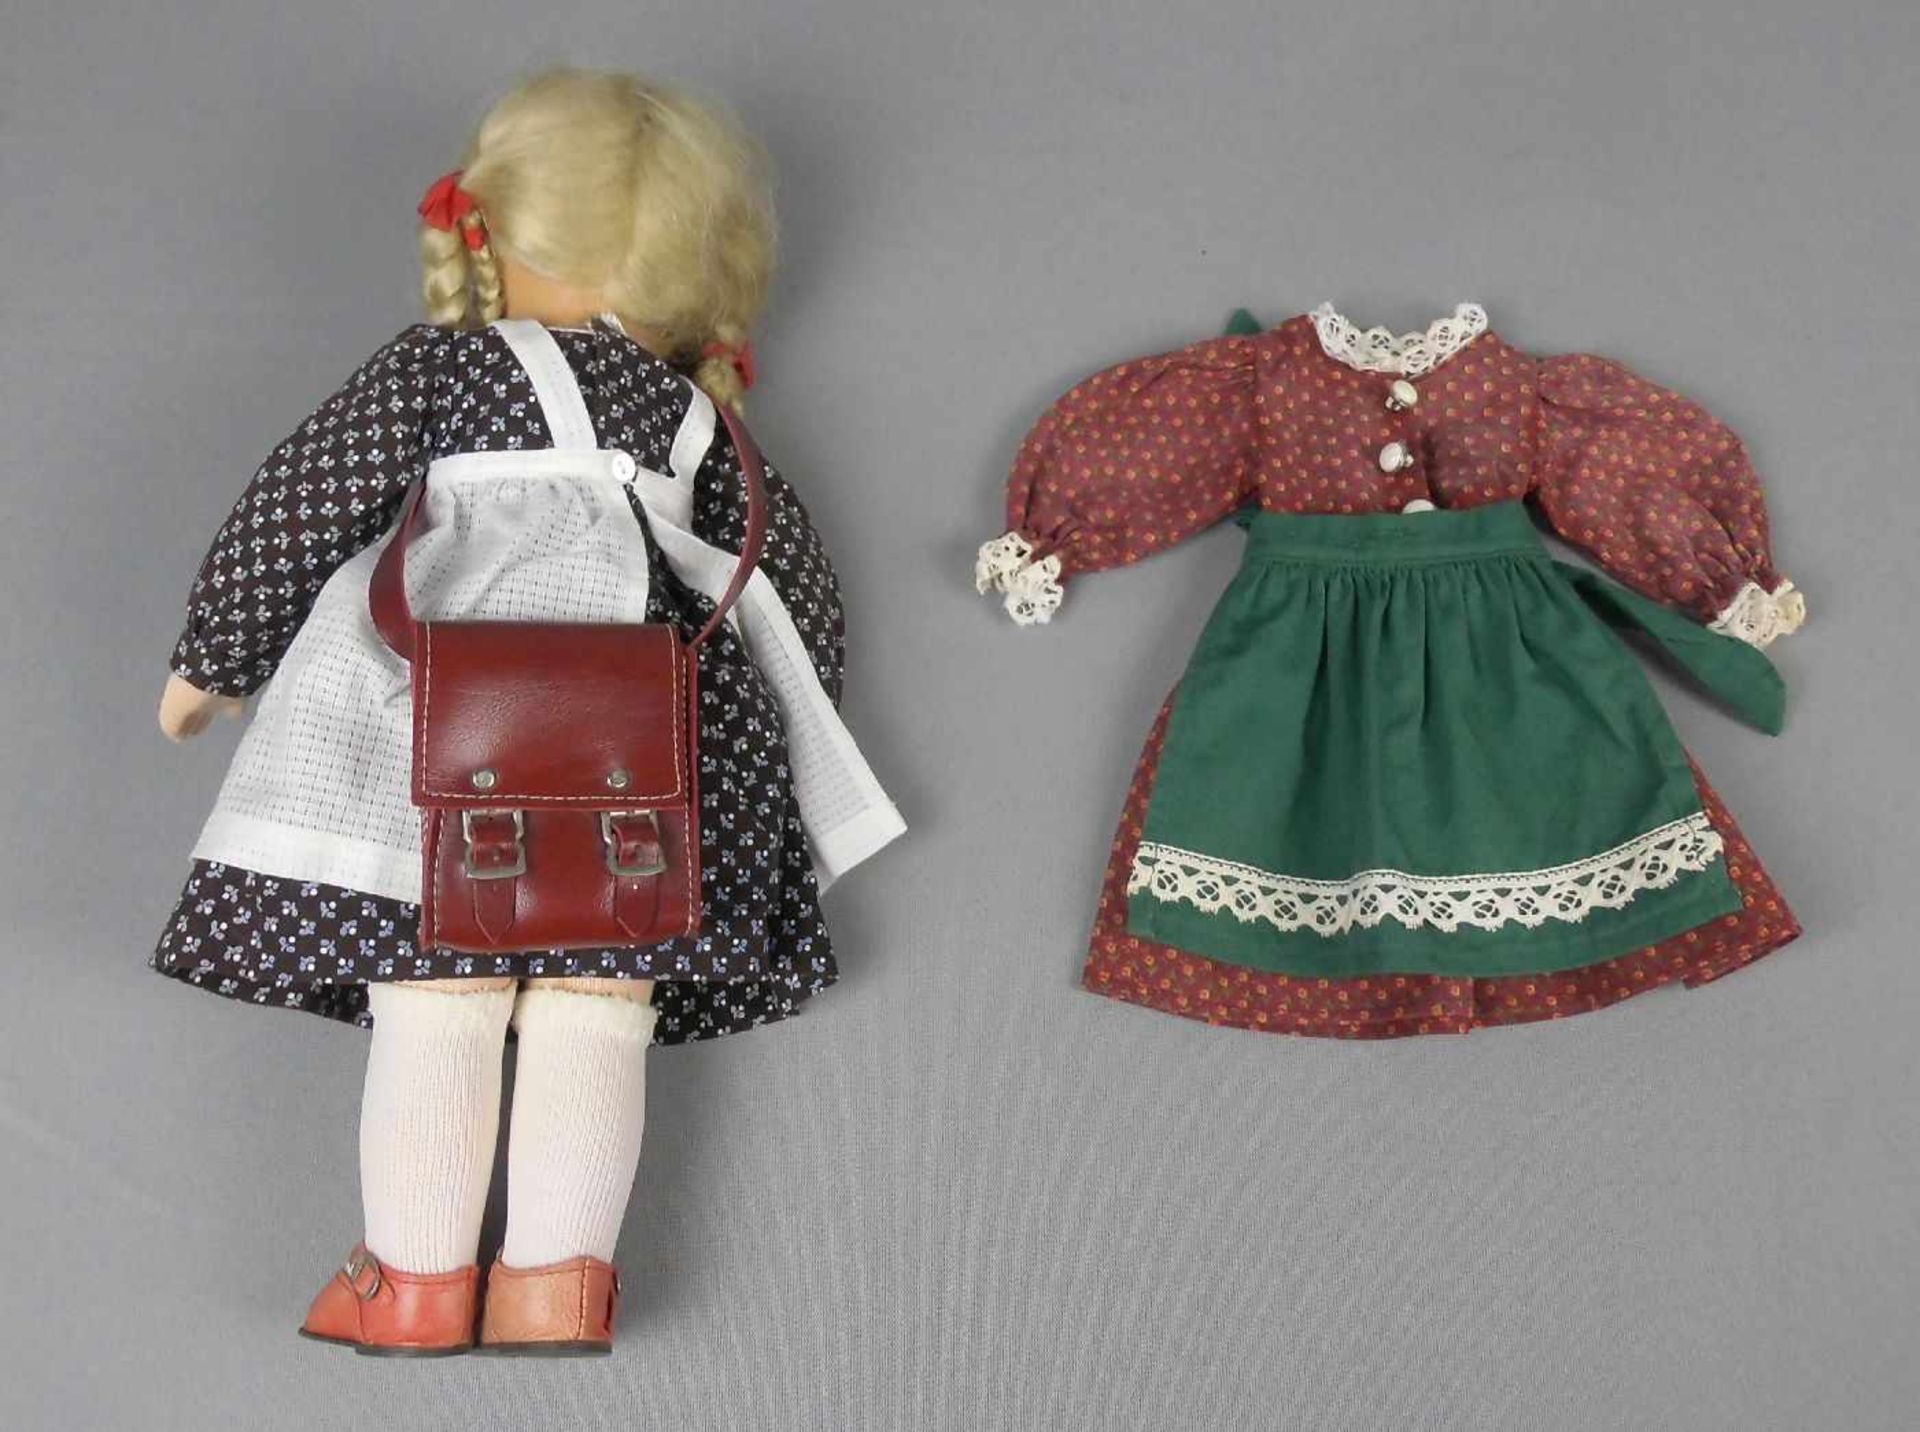 KÄTHE KRUSE - PUPPE "DÄUMELINCHEN", mit Tasche und Ersatzkleid / doll, 2. Hälfte 20. Jh., L. 38 cm. - Image 2 of 2